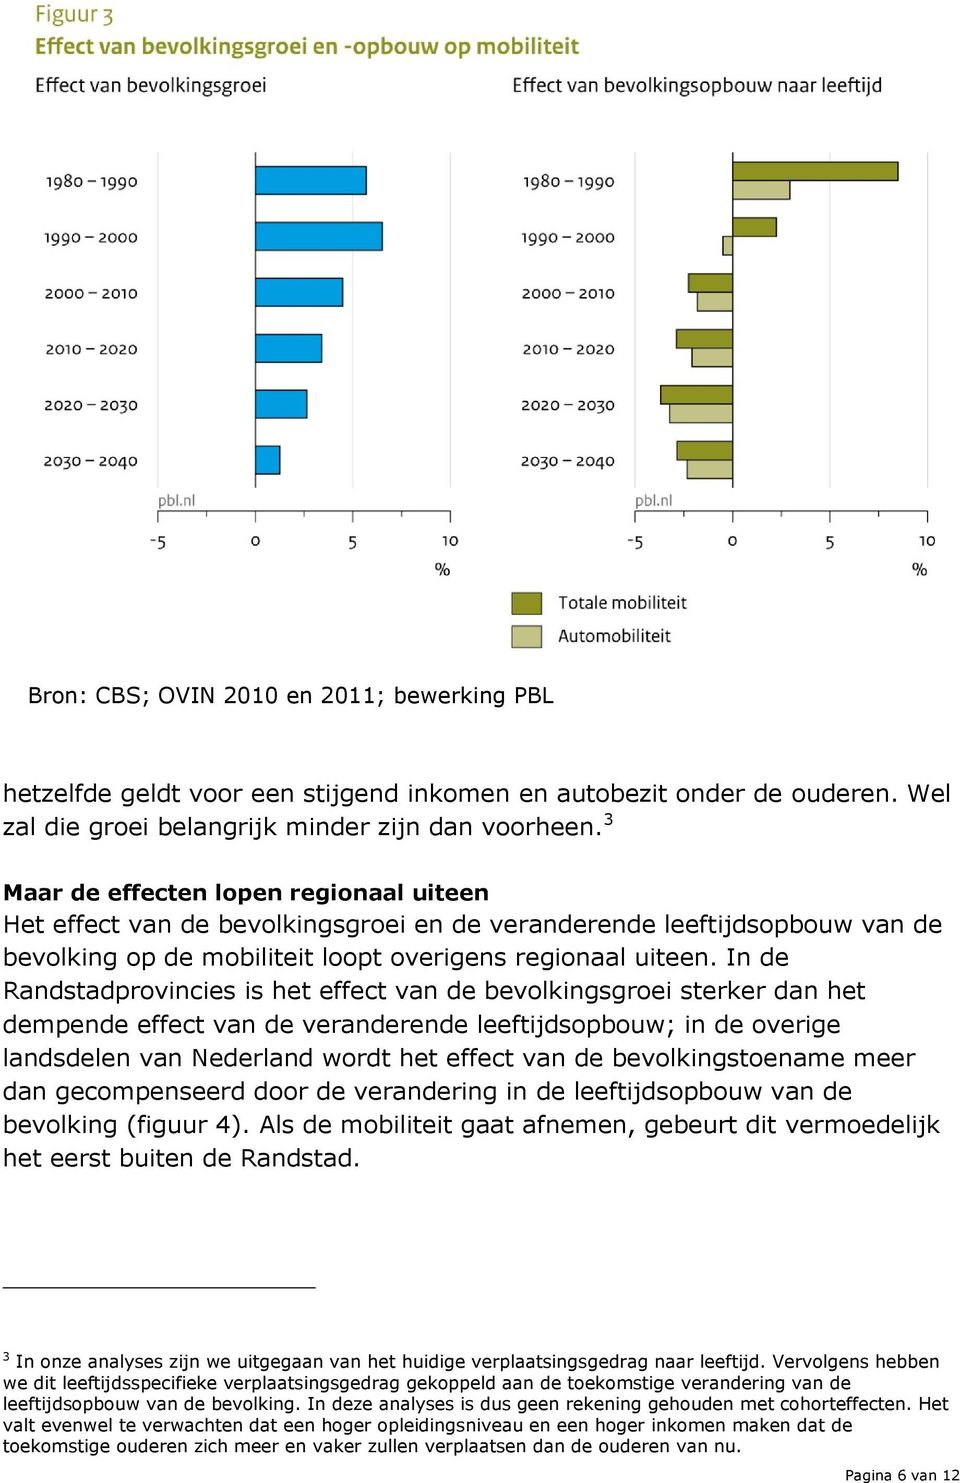 In de Randstadprovincies is het effect van de bevolkingsgroei sterker dan het dempende effect van de veranderende leeftijdsopbouw; in de overige landsdelen van Nederland wordt het effect van de